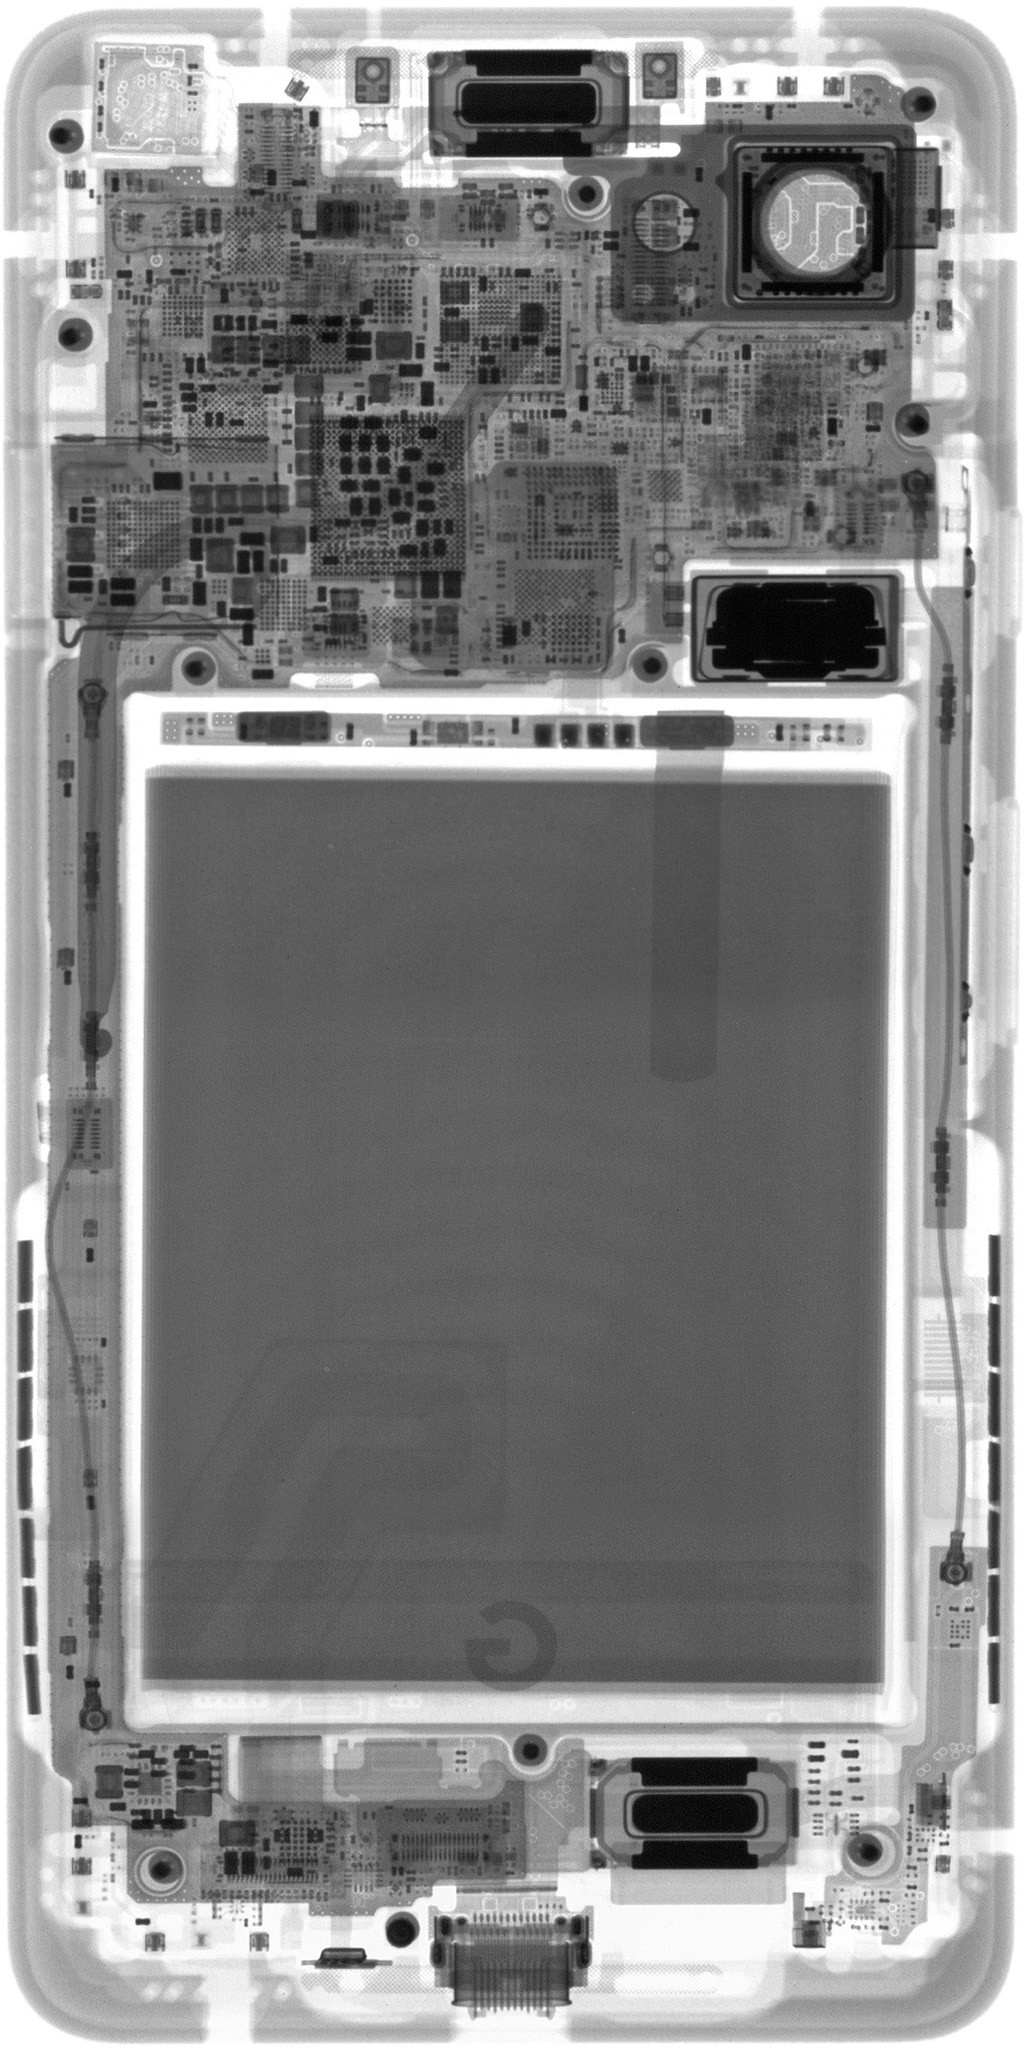 Chia sẻ bộ hình nền xuyên thấu linh kiện bên
trong của các smartphone Samsung, LG,...Mời anh em tải về